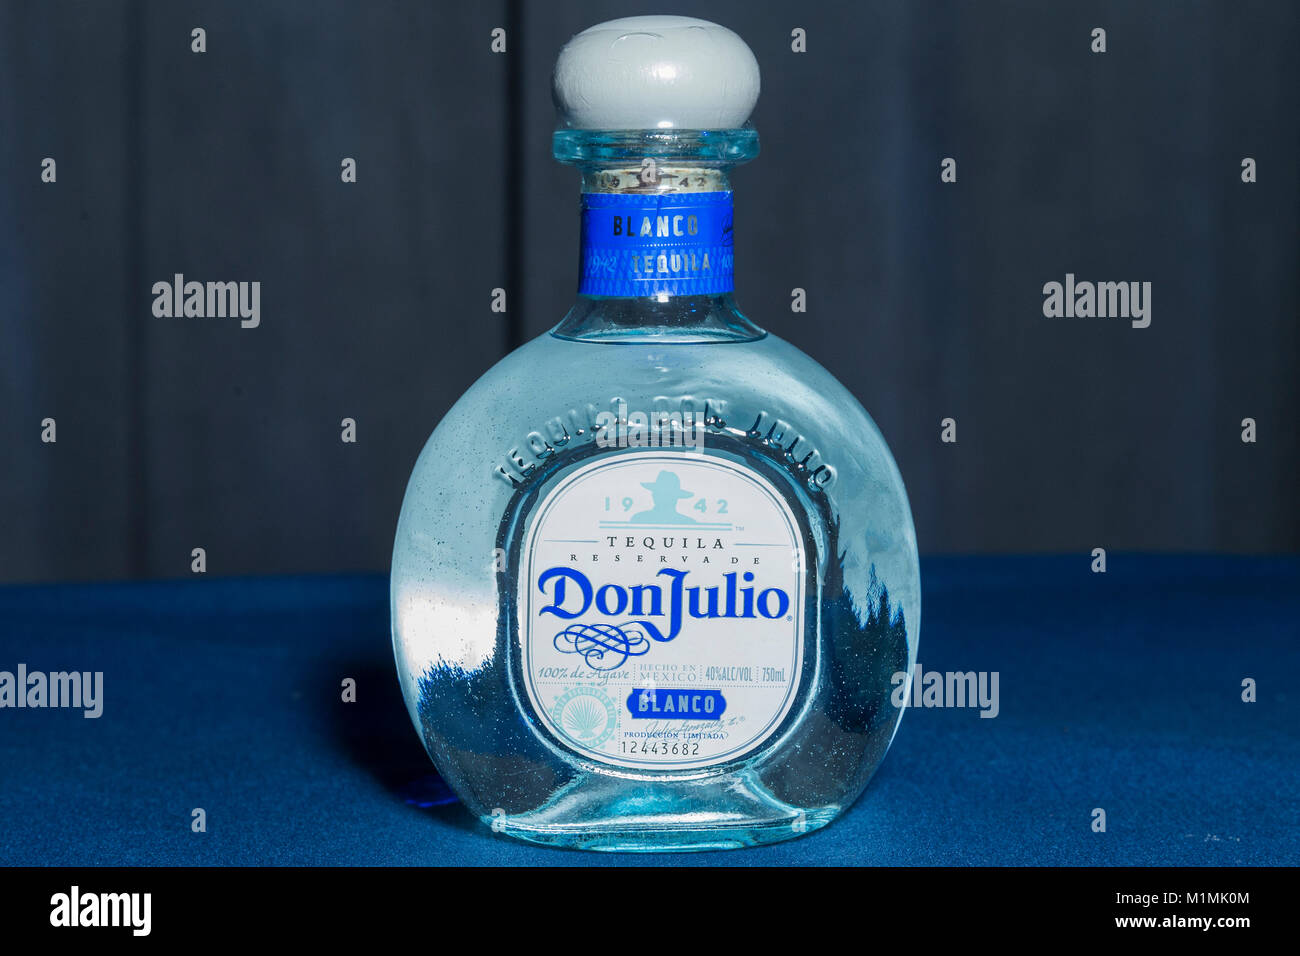 New York, NY - 30. Januar 2018: Flasche mexikanischen Don Julio tequila auf dem Display während Cocktail Stunde bei der Erkundung der Künste 11. jährlichen Gala im Ziegfeld Ballsaal Stockfoto